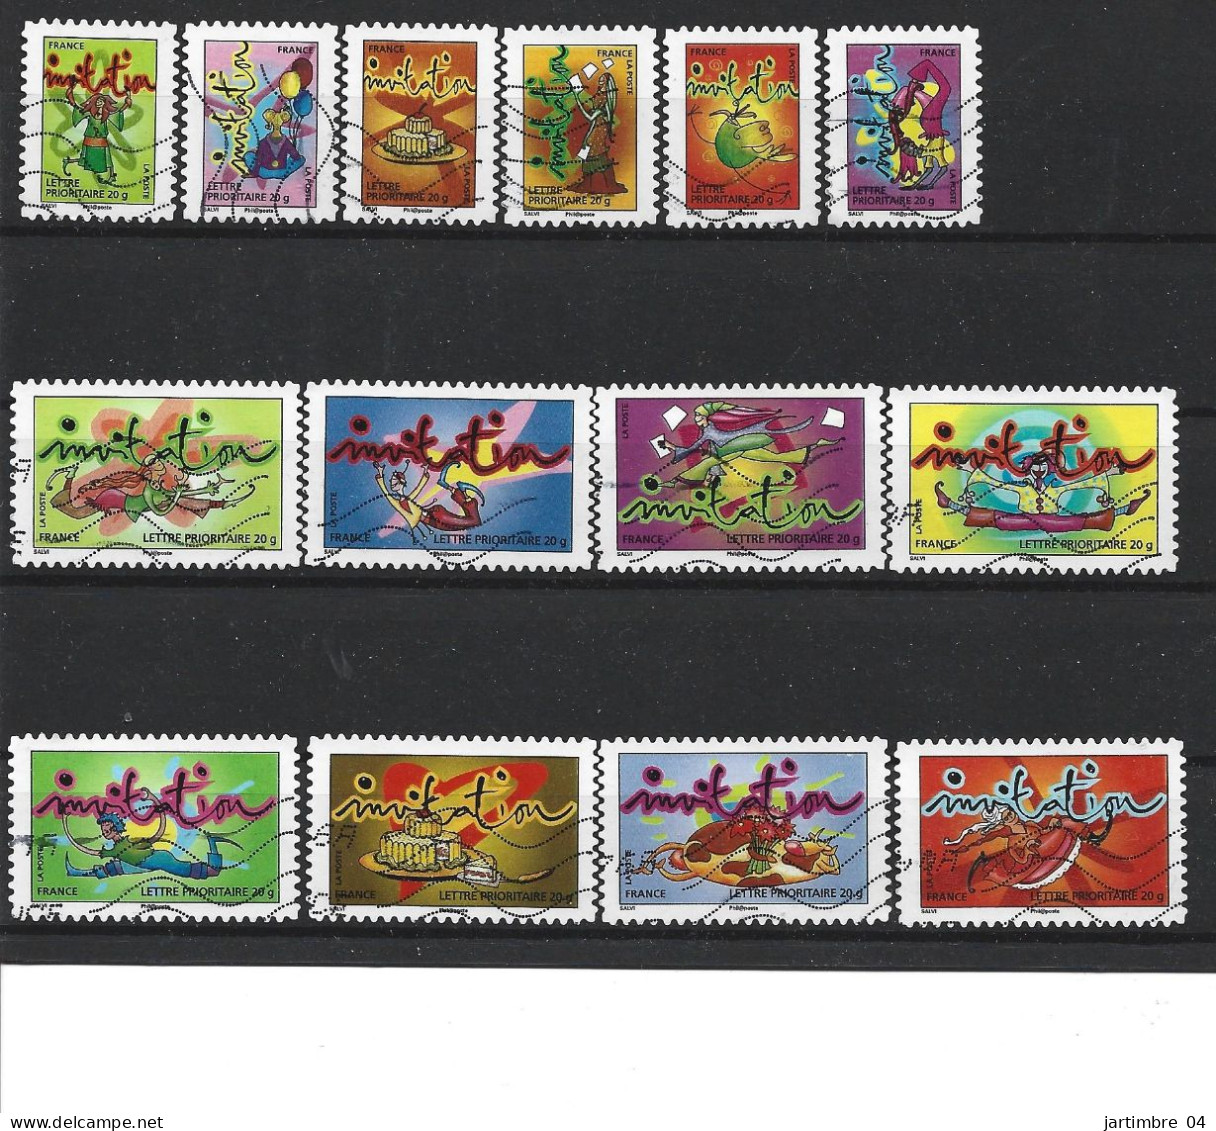 2009 FRANCE Adhesif 341-54 Oblitérés, Invitation, Série Complète - Used Stamps